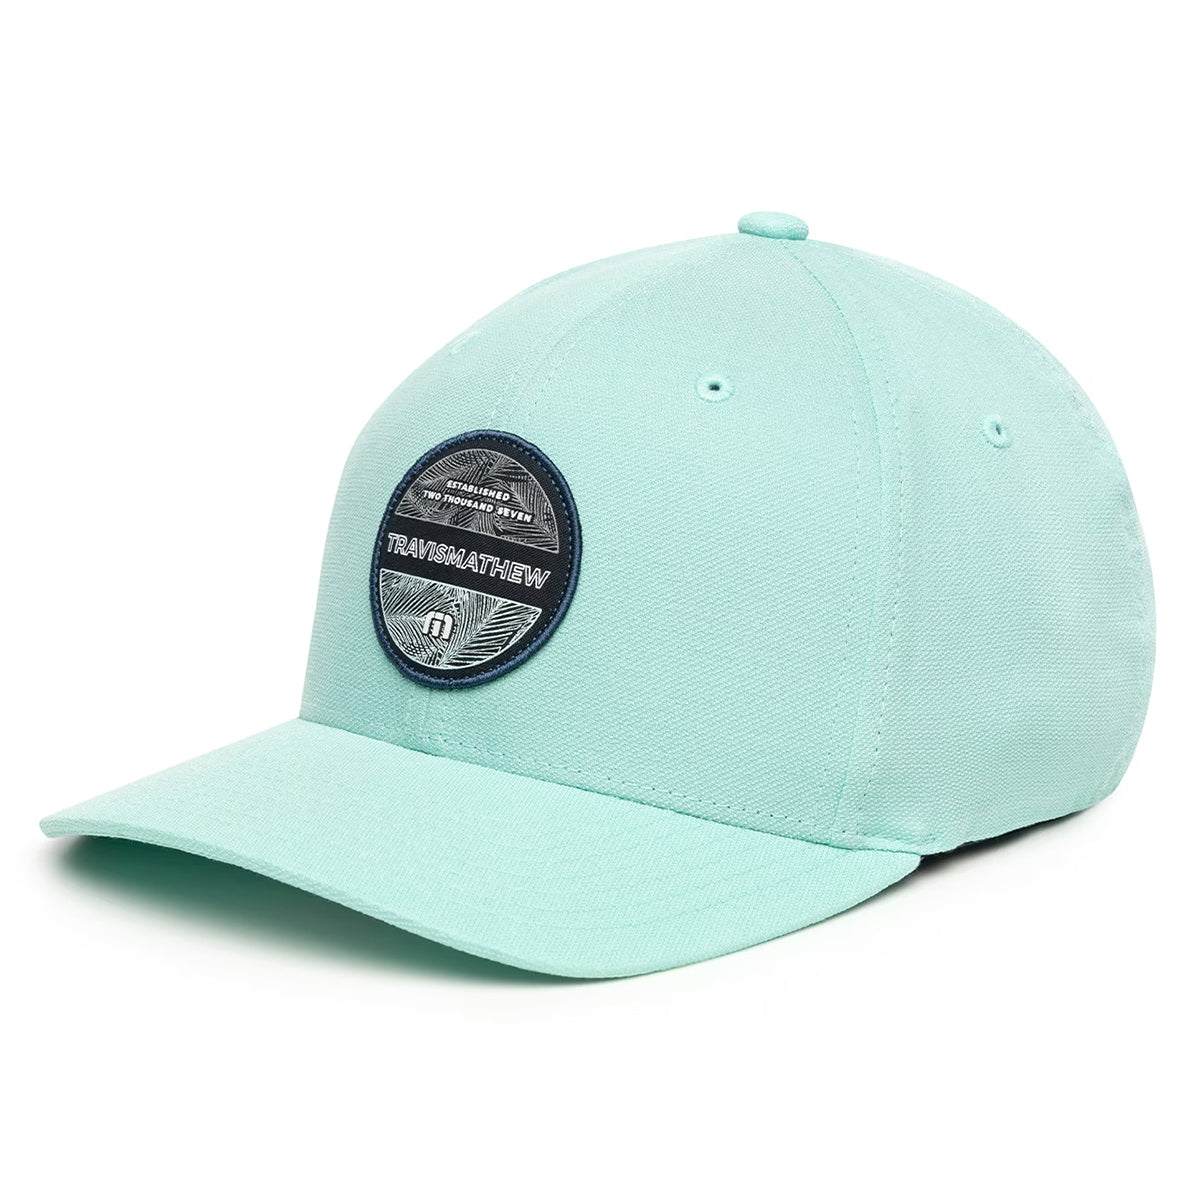 travismathew-puerto-vallarta-fitted-cap-1my225-heather-turquoise